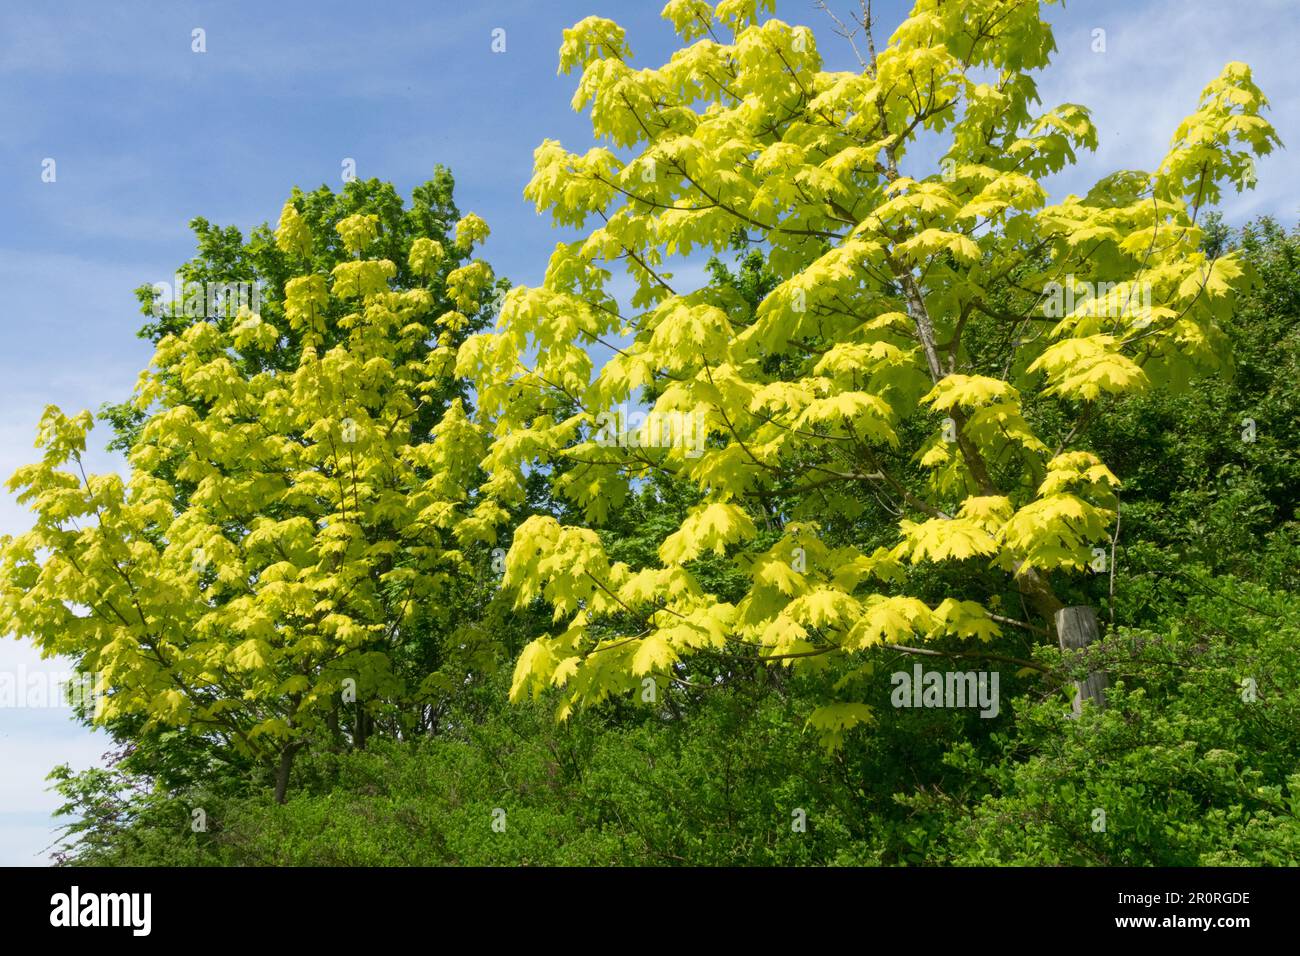 Norway Maple, Trees, Acer platanoides 'Princeton Gold', Yellow, Maple, Spring, Weather, Garden Stock Photo